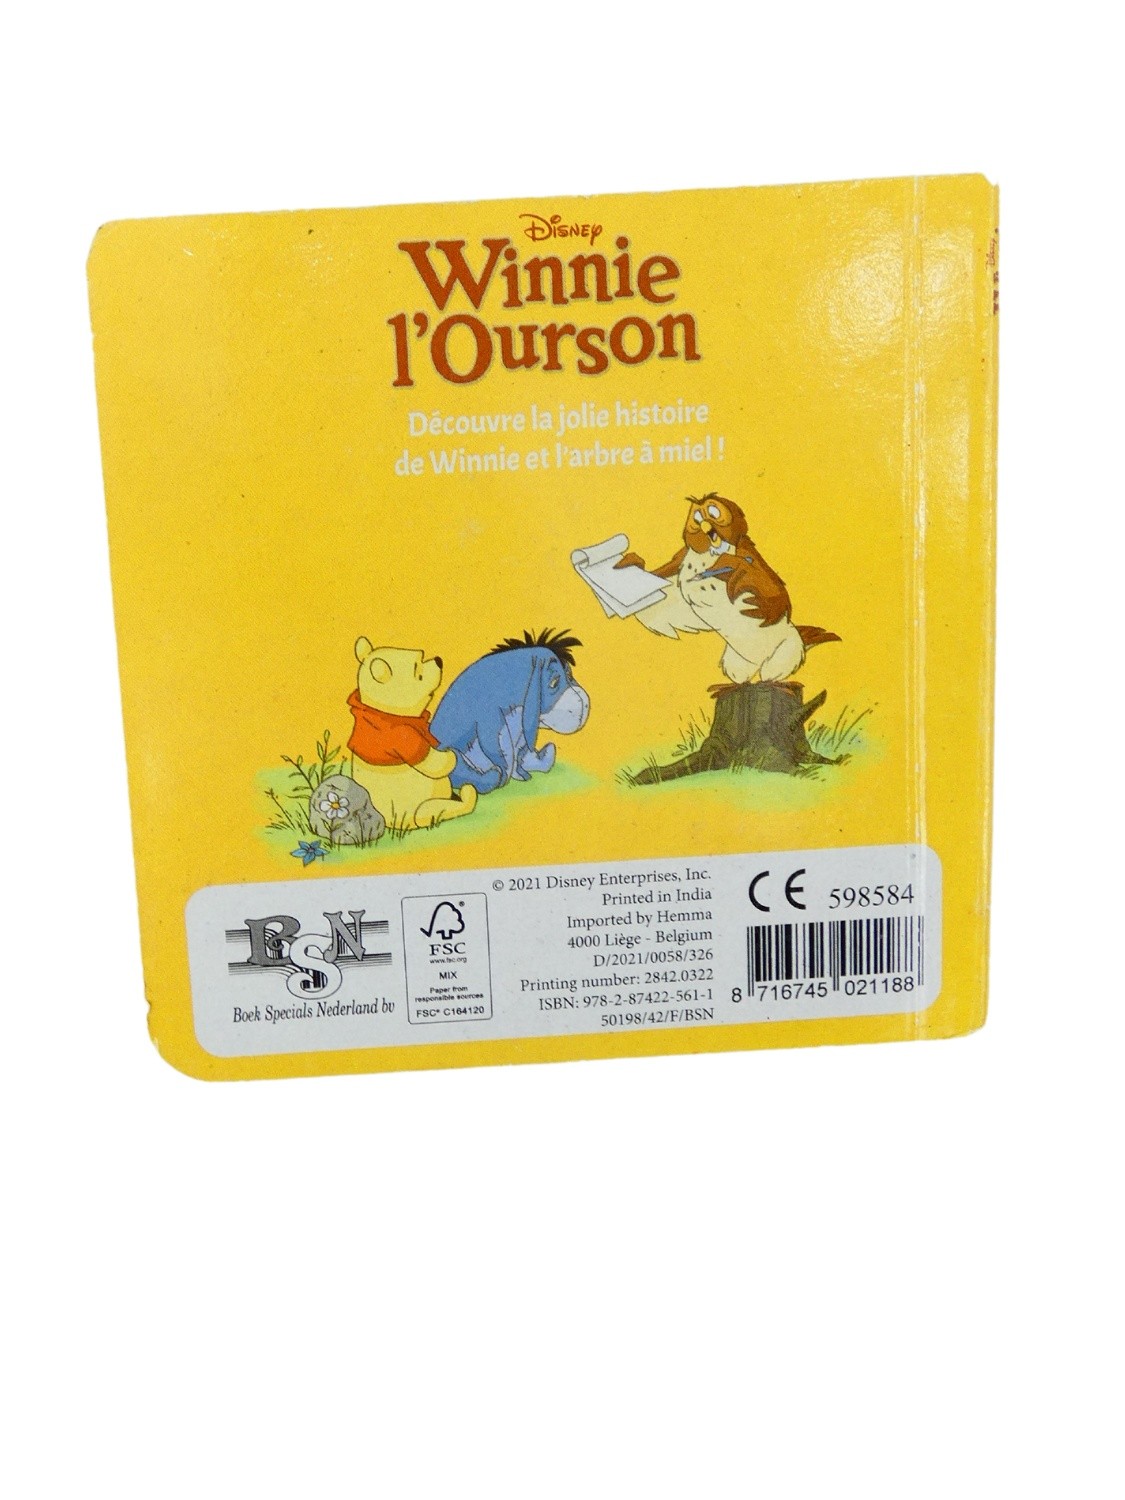 Winnie l'ourson: couleur miel